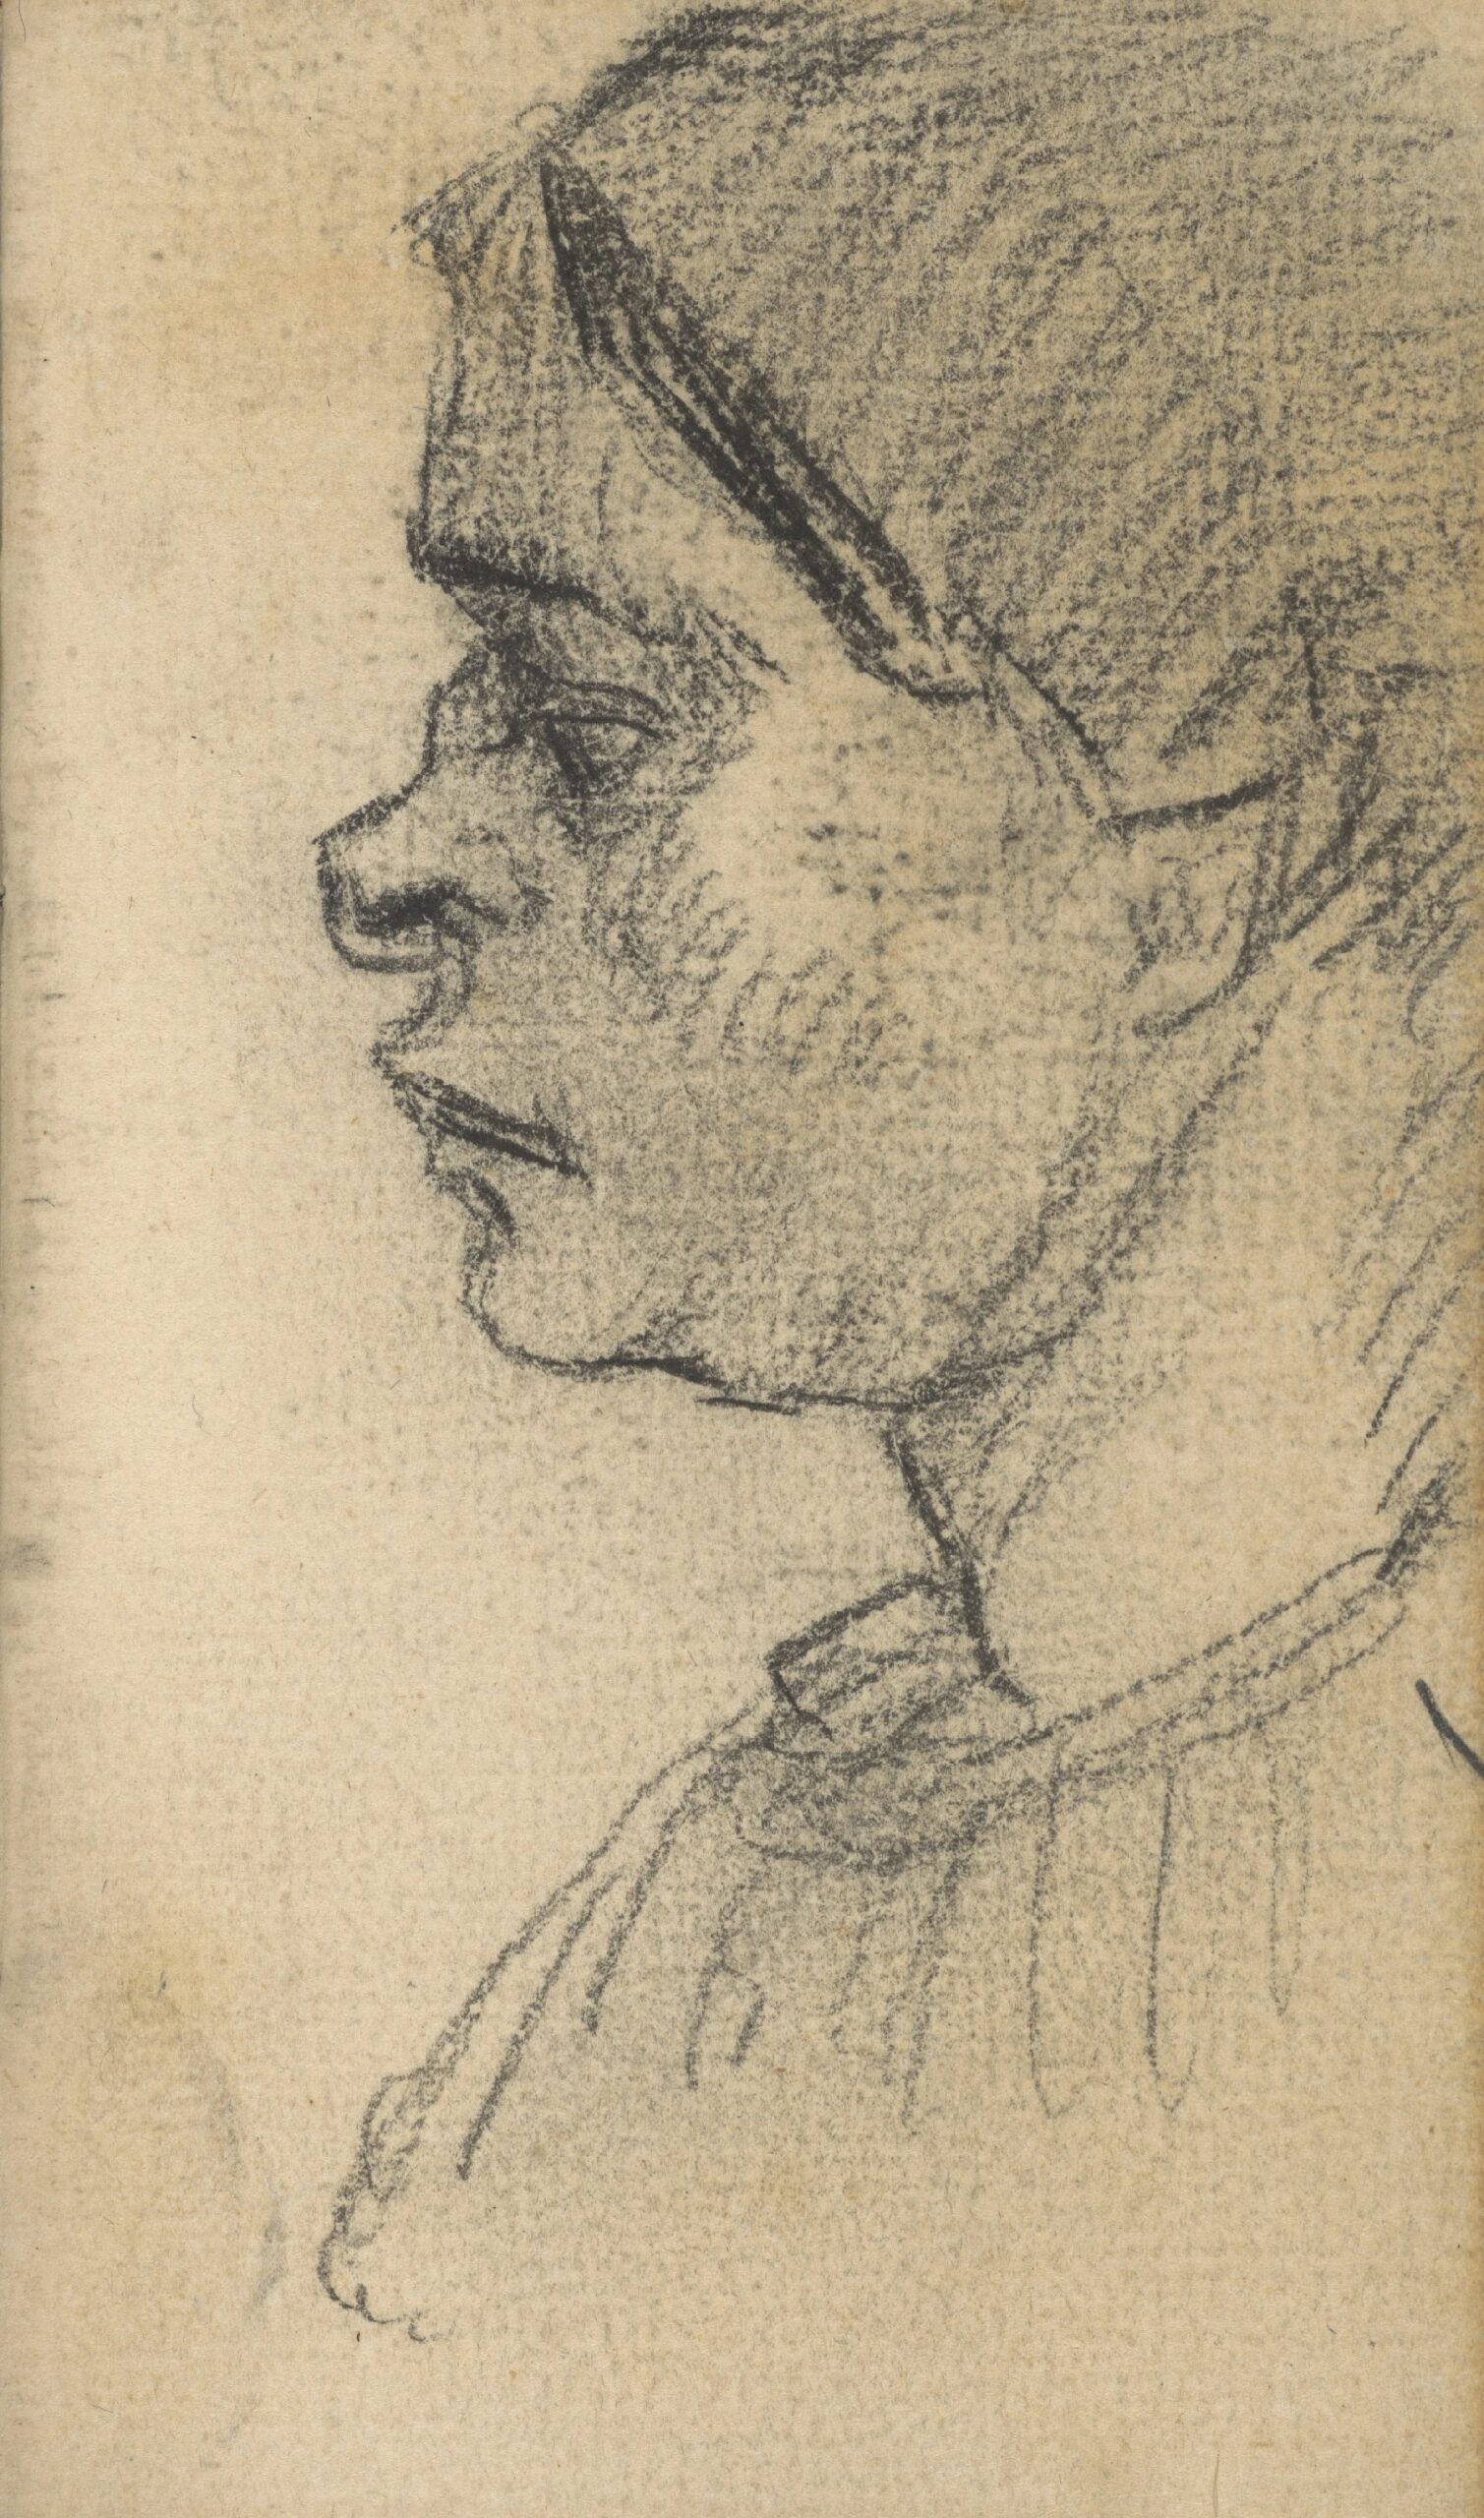 Kop van een vrouw Vincent van Gogh (1853 - 1890), Nuenen, november 1884-september 1885